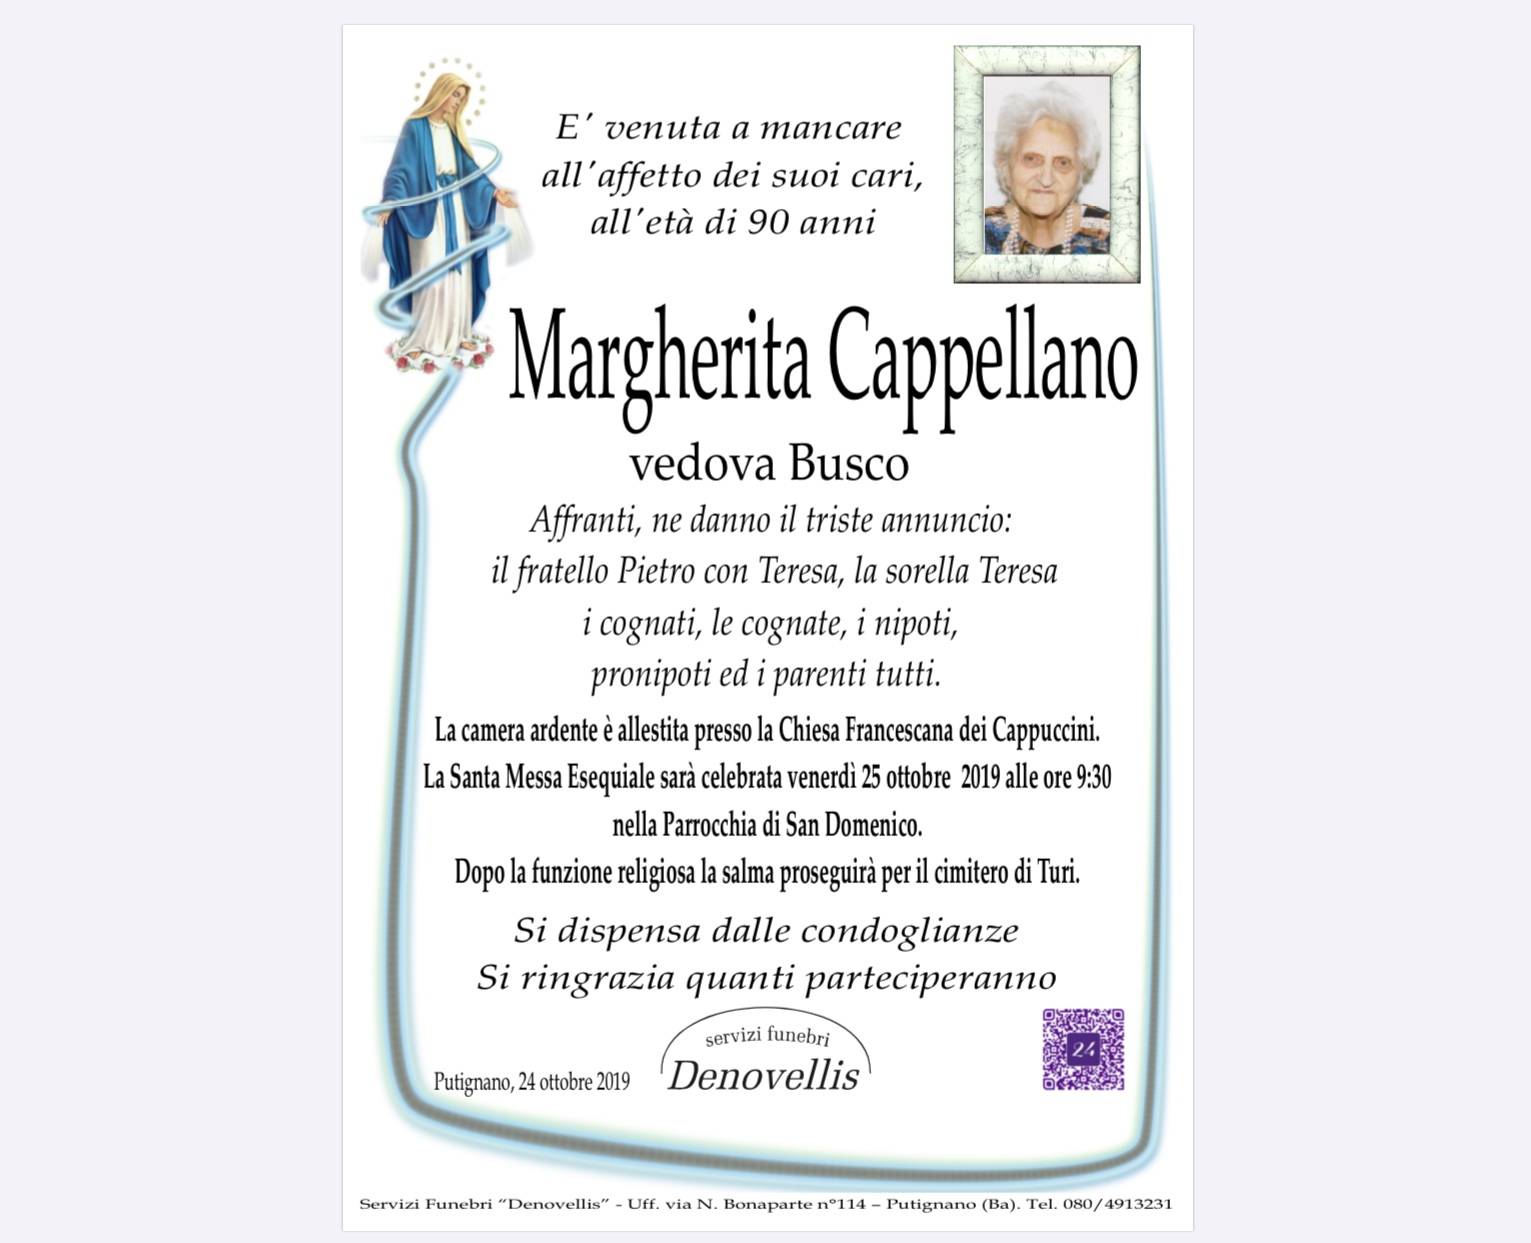 Margherita Cappellano